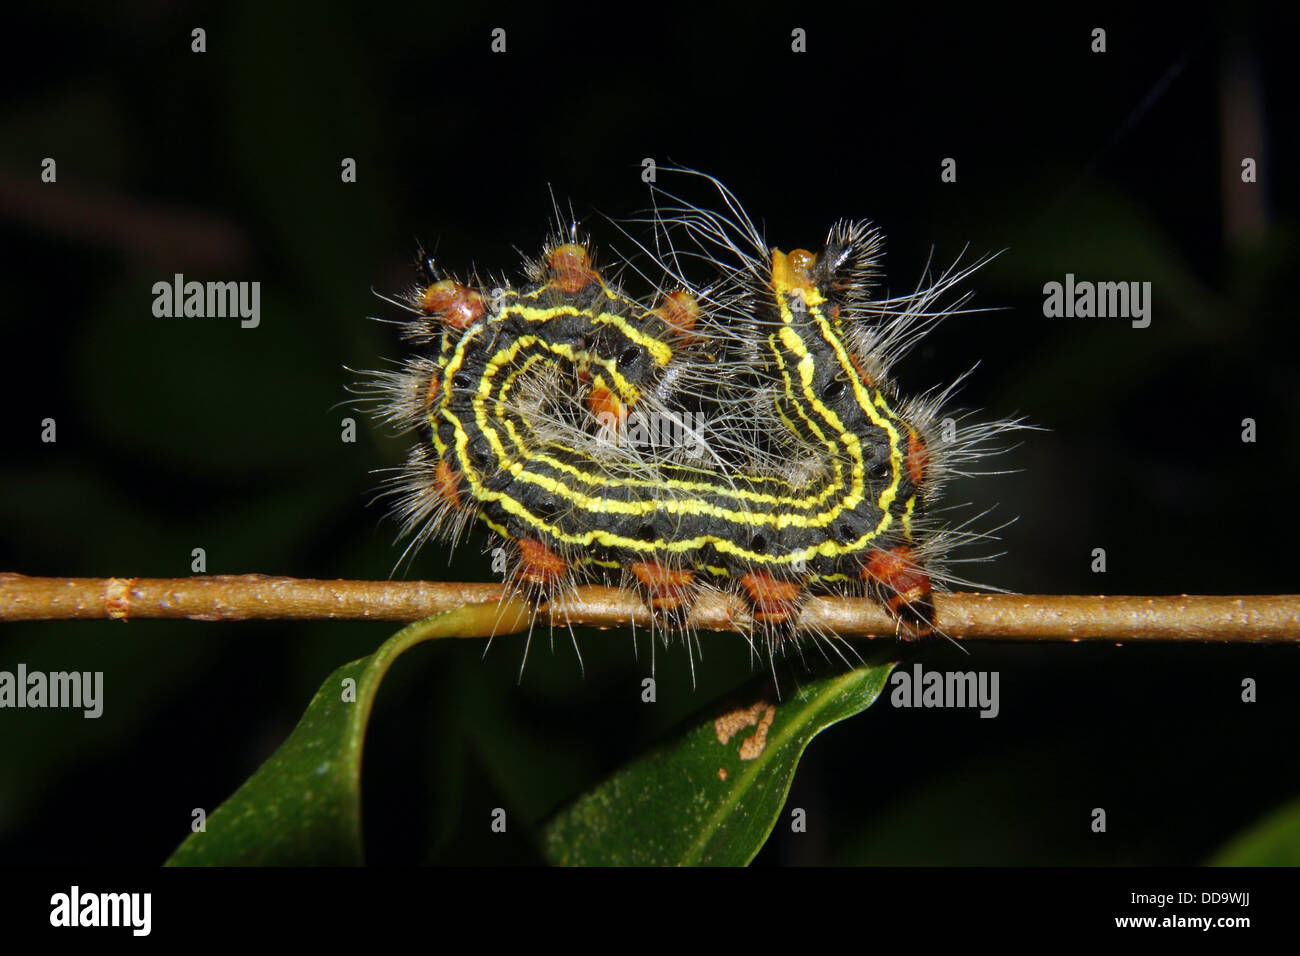 Un Caterpillar Azalea s'accroche à une branche d'une attitude de défense. Banque D'Images